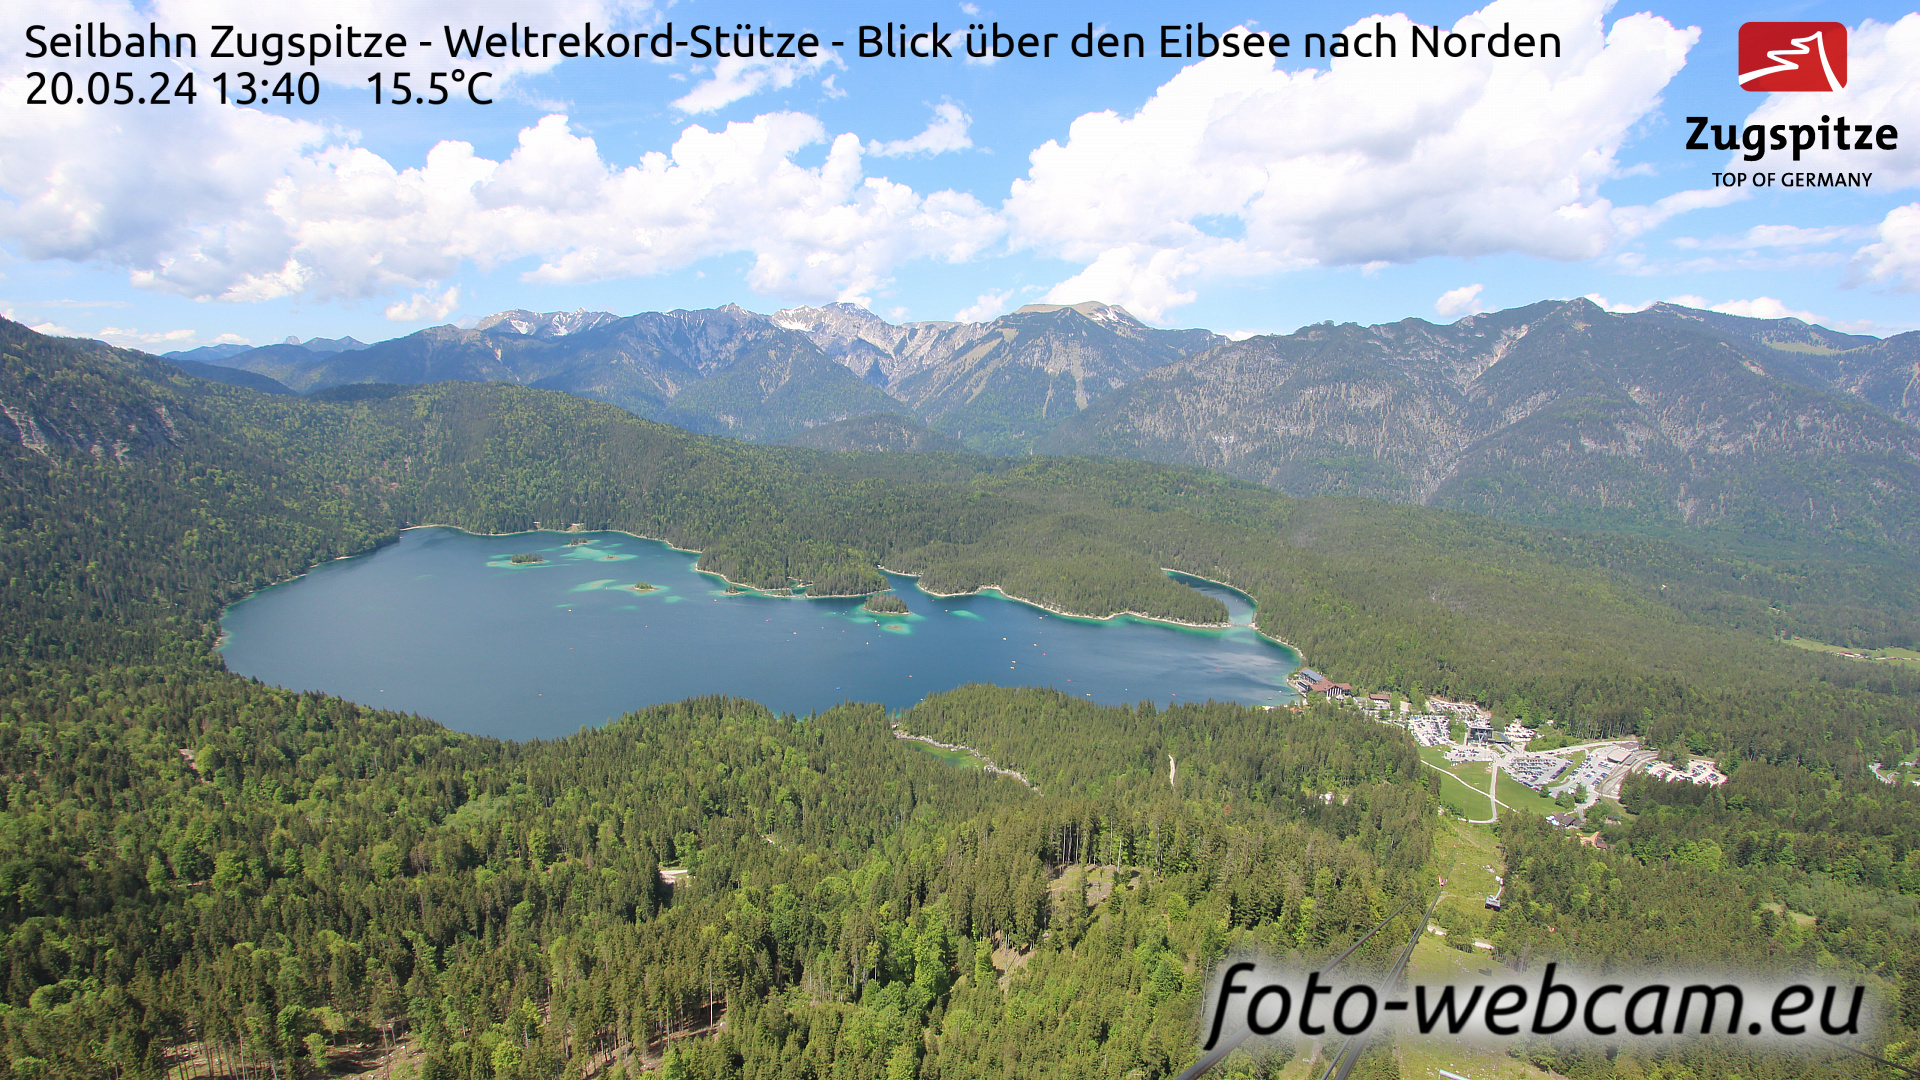 Zugspitze Wed. 13:49